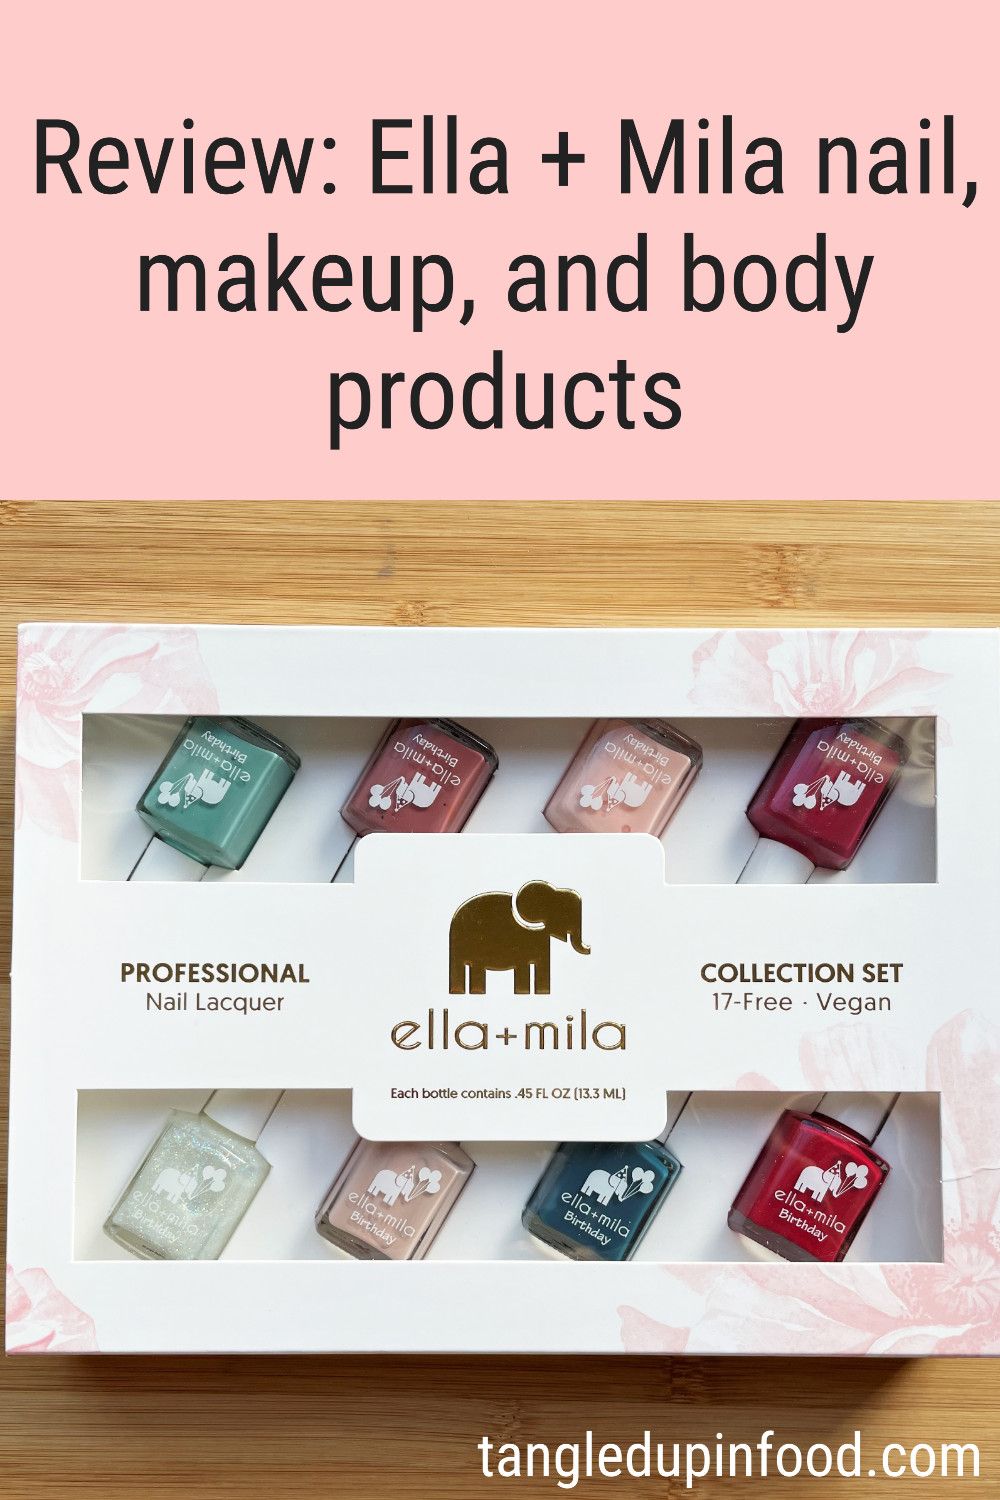 Box of nail polish and text reading "Review: Ella + Mila nail, makeup, and body products"